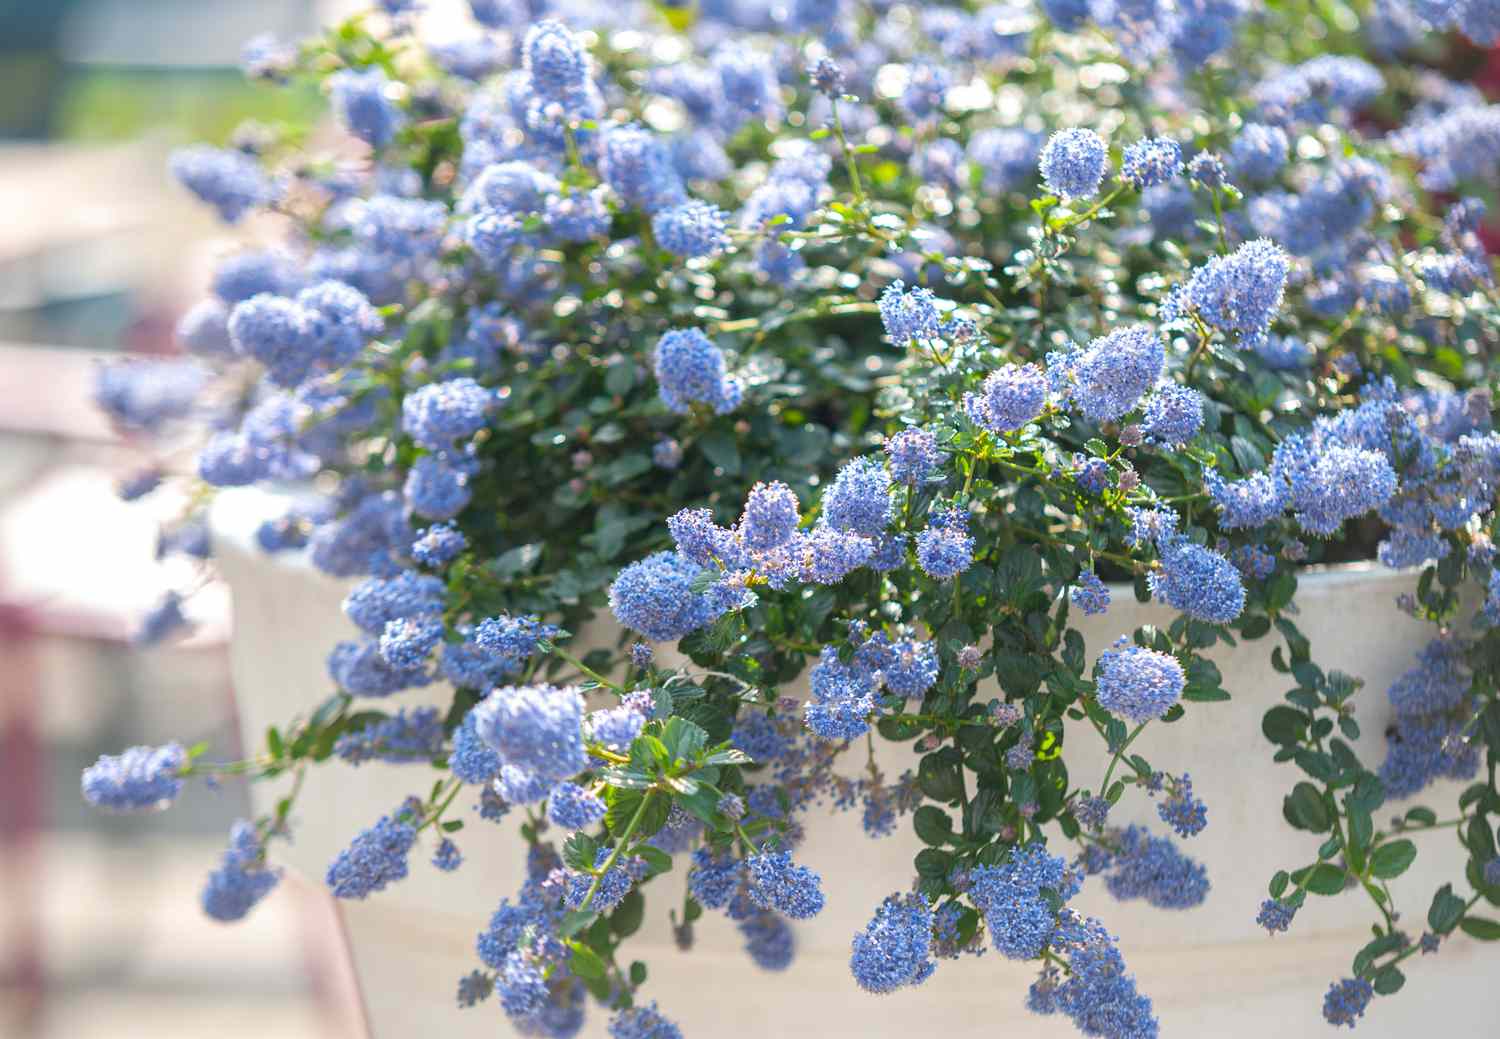 Blau blühende Ceanothus-Strauchzweige mit kleinen grünen Blättern und kleinen blauen Blütenbüscheln, die am weißen Topf hängen 